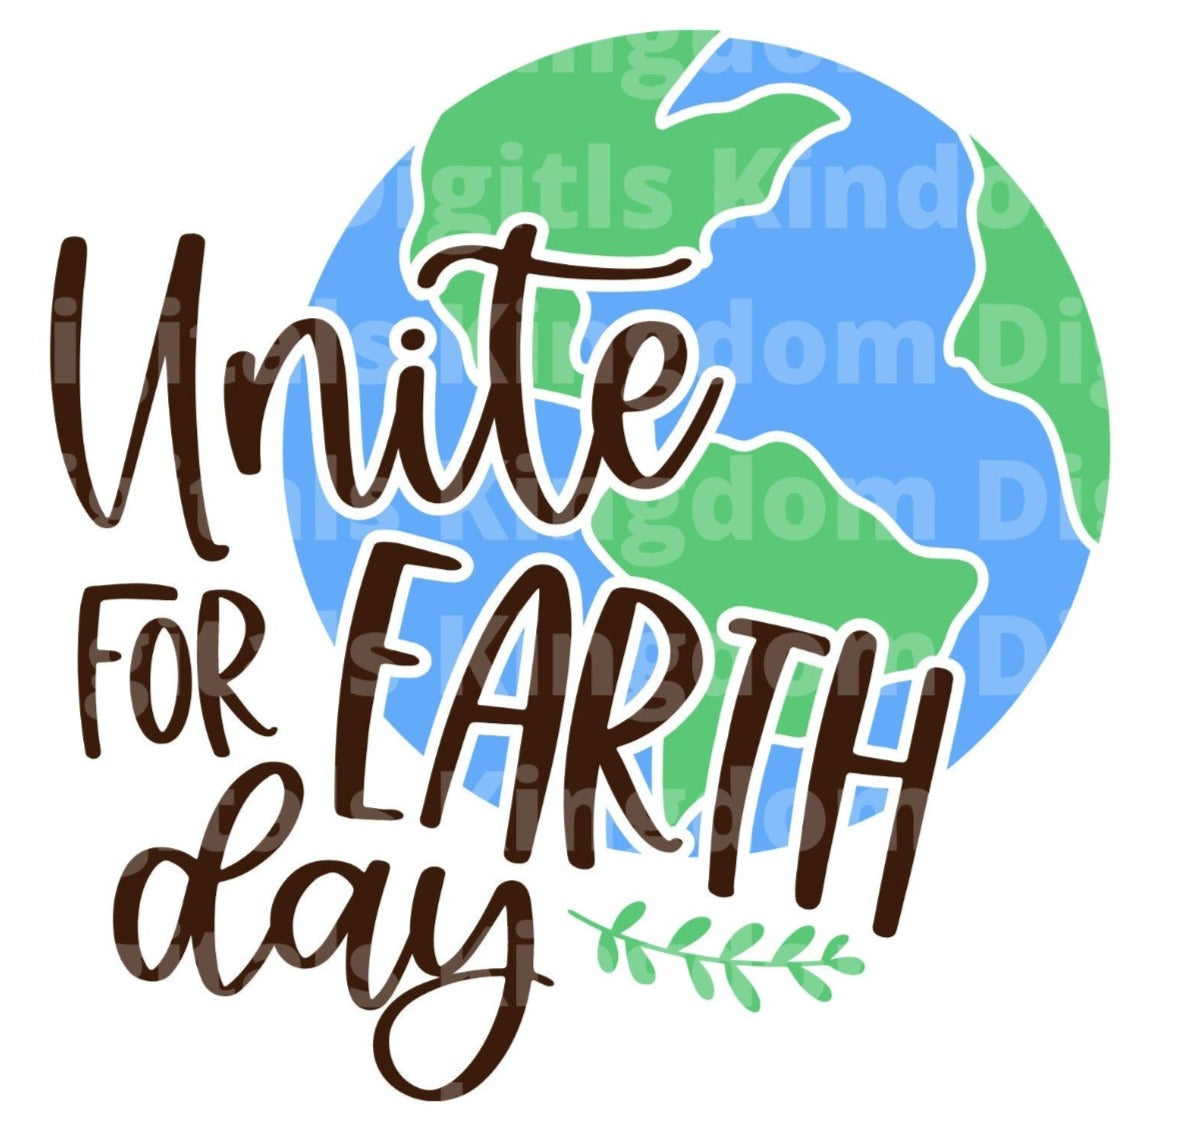 Unite For Earth Day SVG Cut File